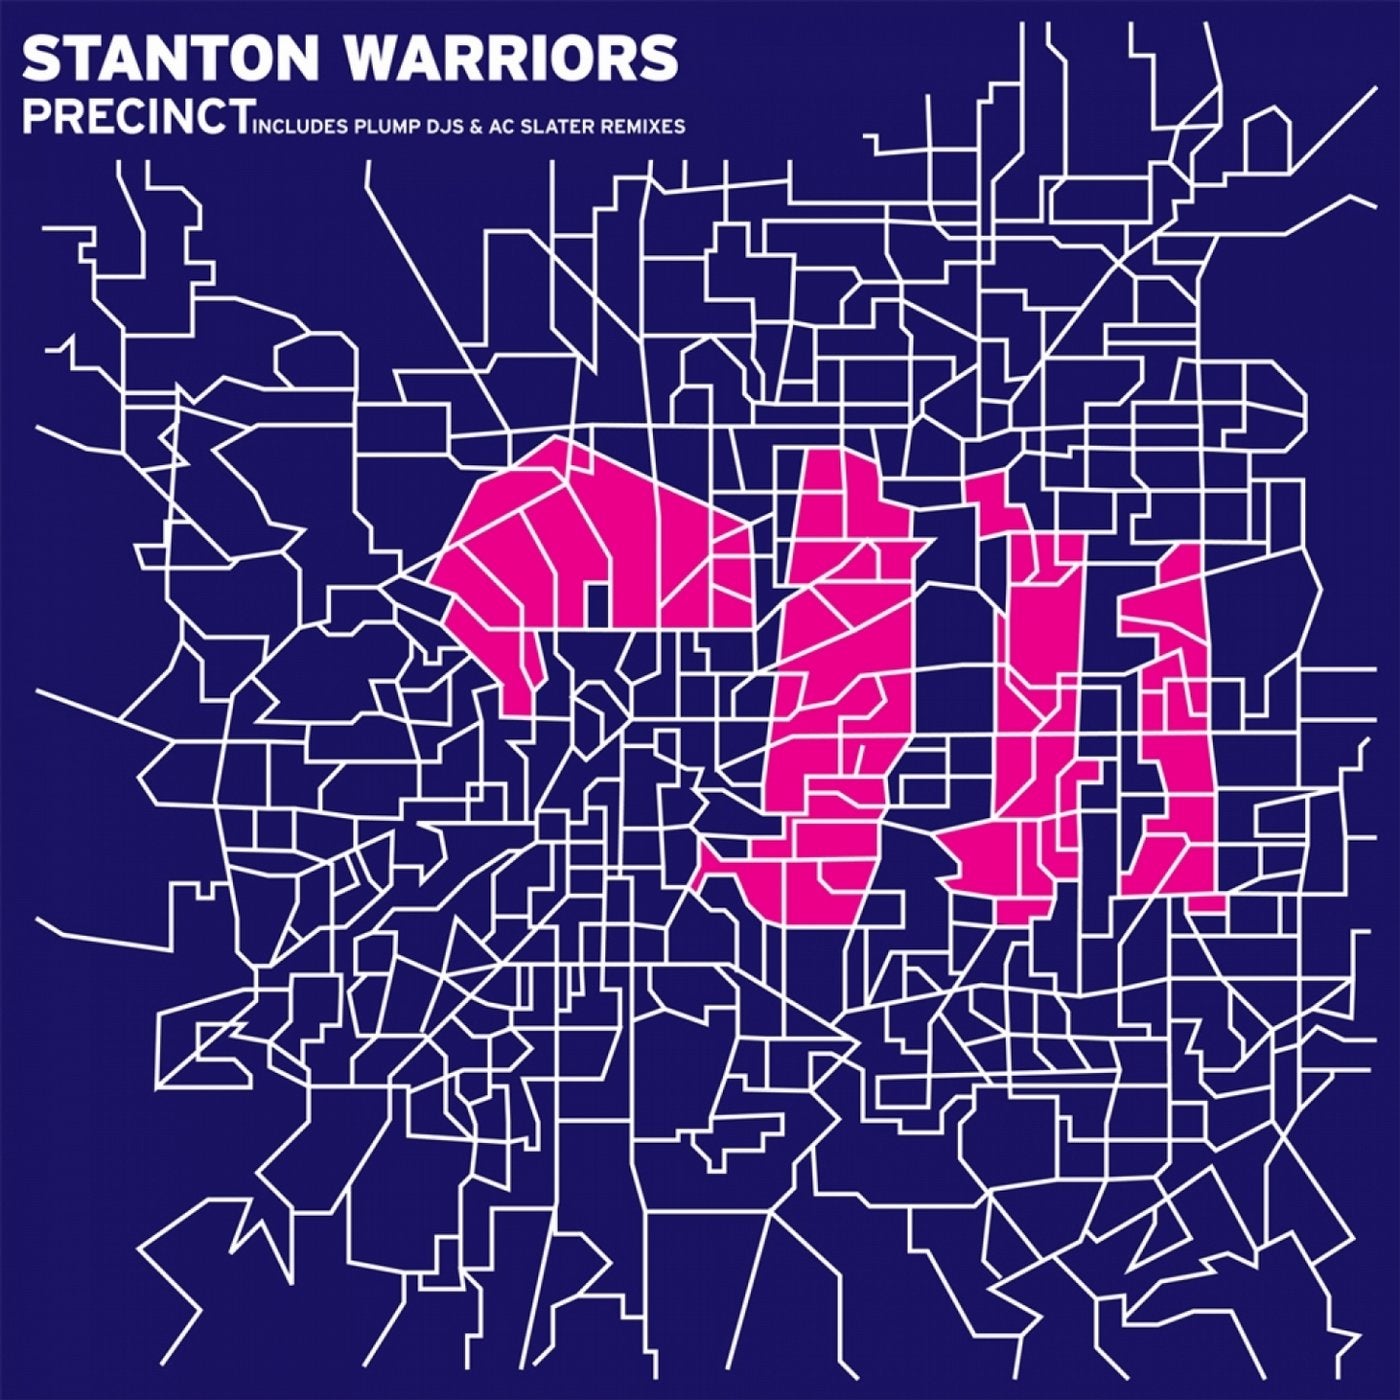 Stanton warriors. Stanton Warriors - Precinct. Stanton Warriors логотипы. Stanton-Warriors-Precinct-Original-Mix логотип. Stanton Warriors Rise.